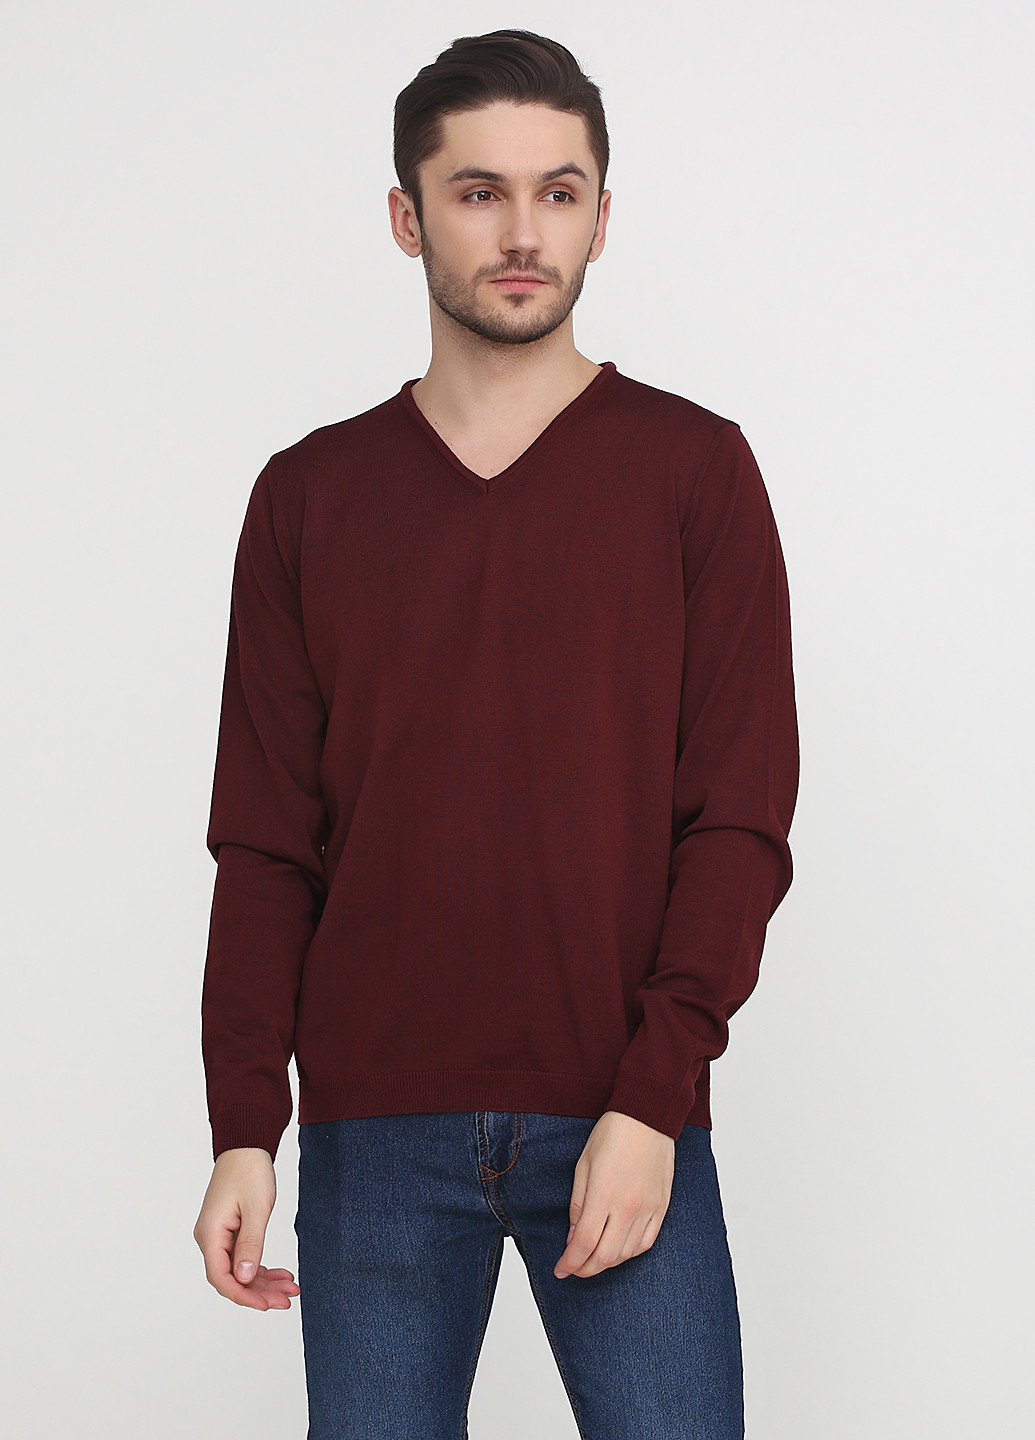 Бордовый демисезонный пуловер пуловер Belika